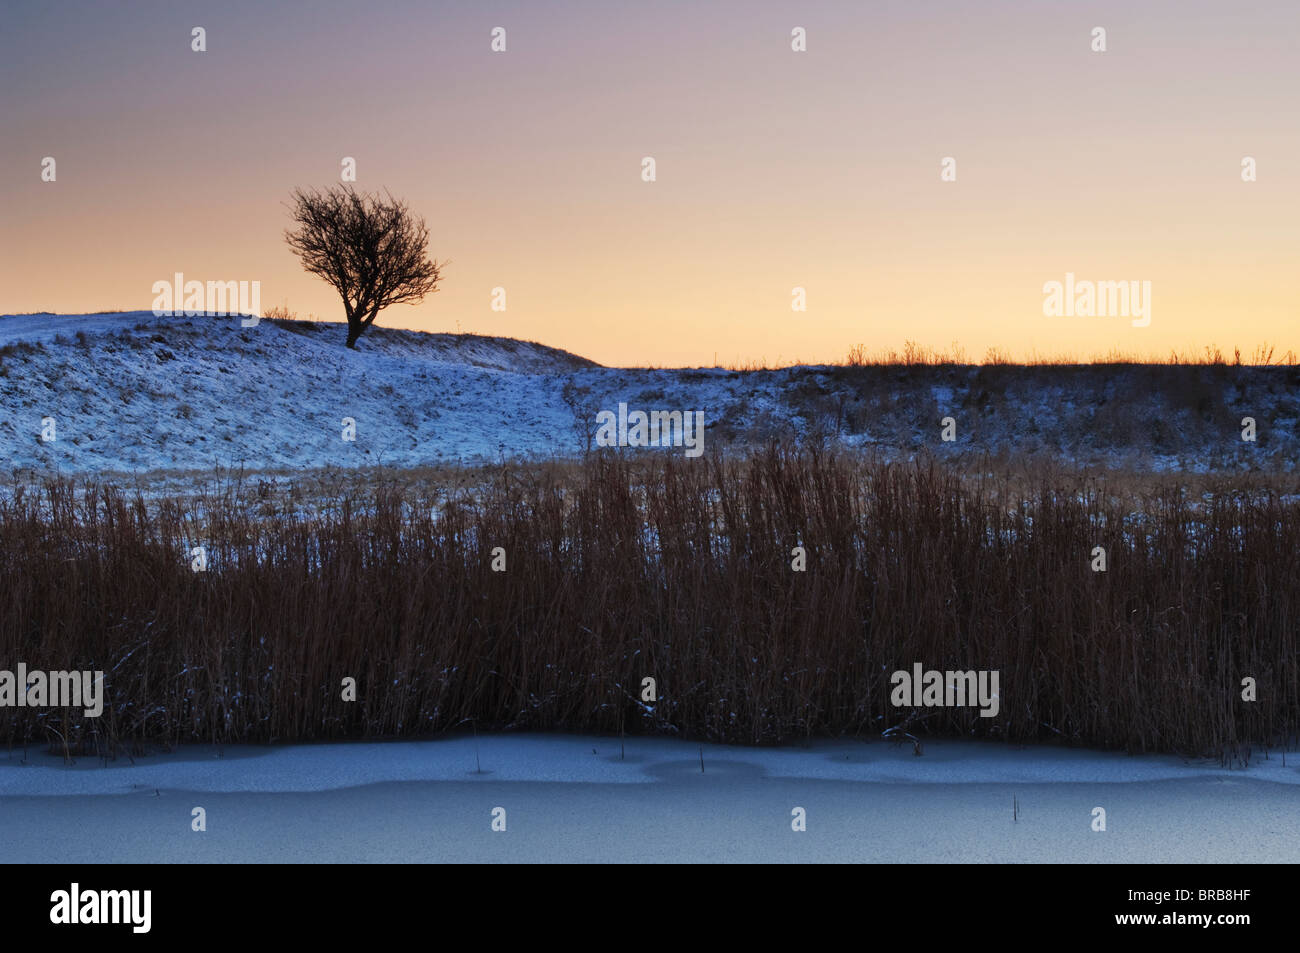 L'Aubépine commune, Crataegus monogyna, silhouette au coucher du soleil, les marais nord du Kent, à l'île de Sheppey, Kent, Angleterre, hiver Banque D'Images